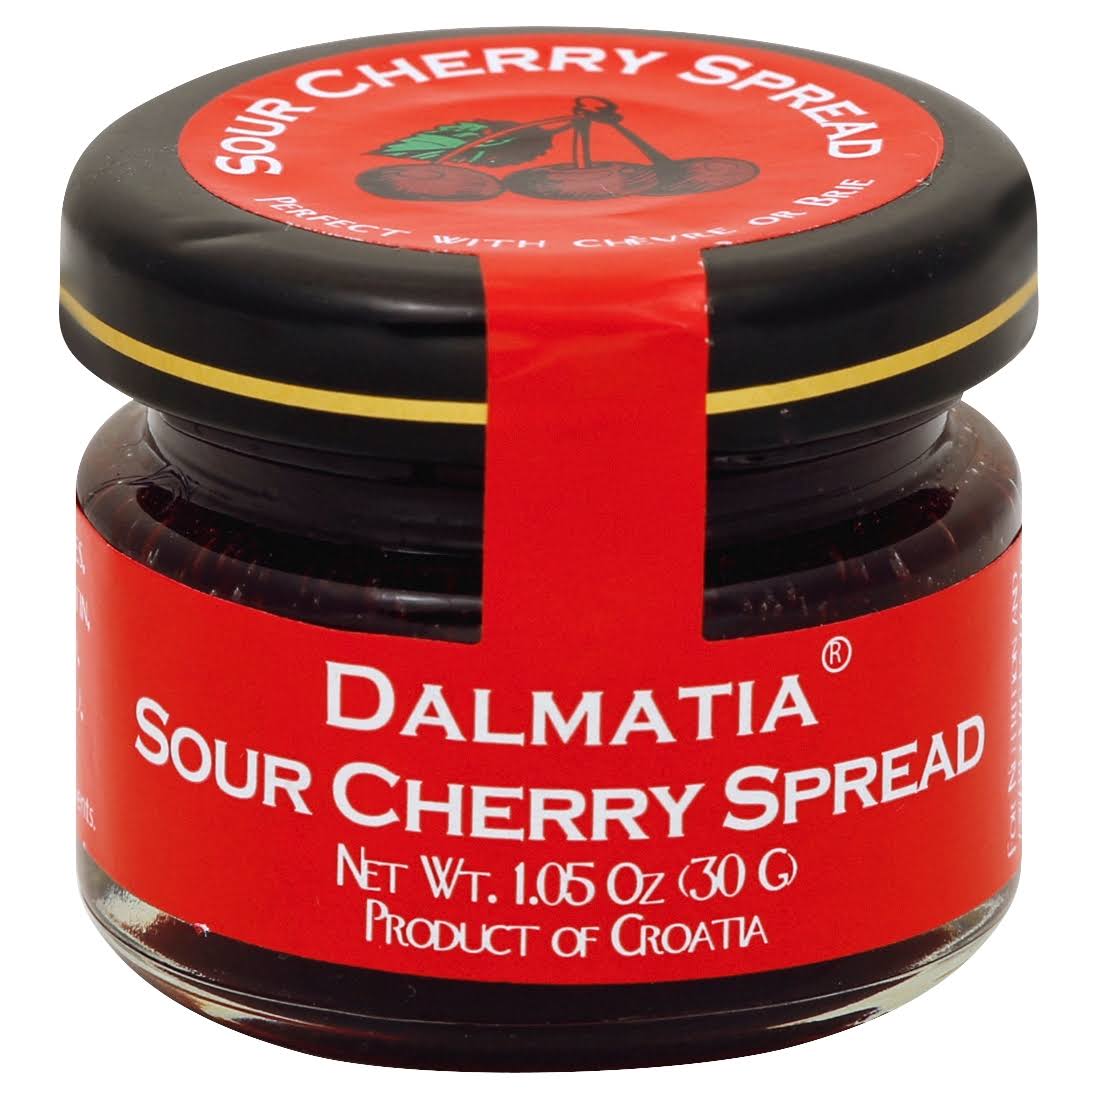 Dalmatia Sour Cherry Spread - 1.05 oz